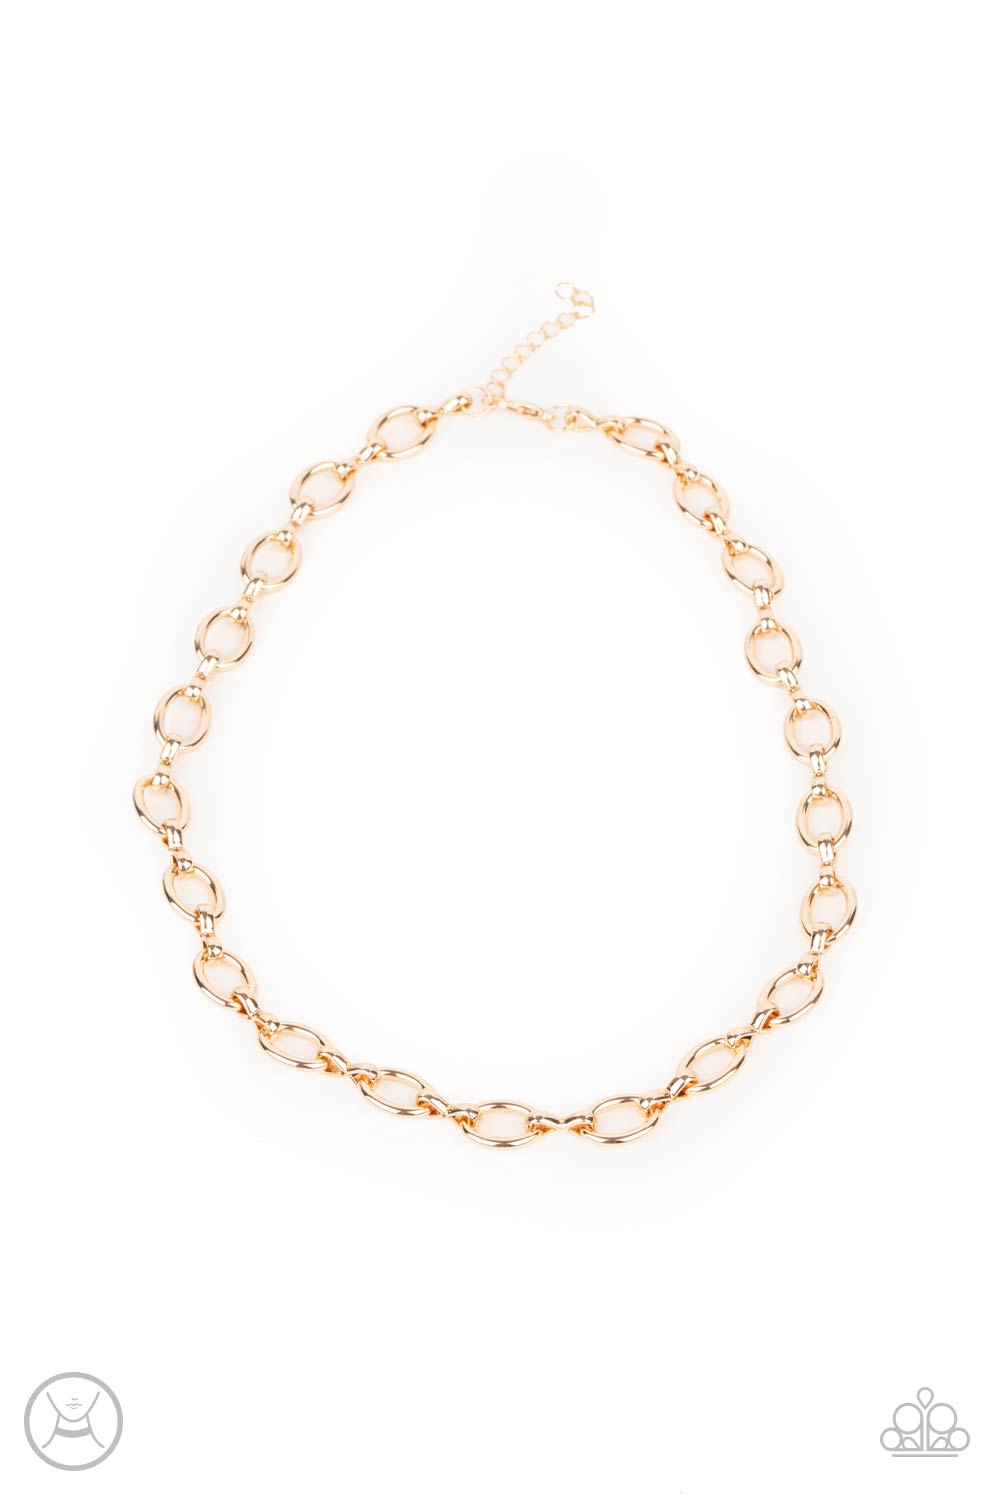 Craveable Couture - Gold Choker Necklace Set - Princess Glam Shop